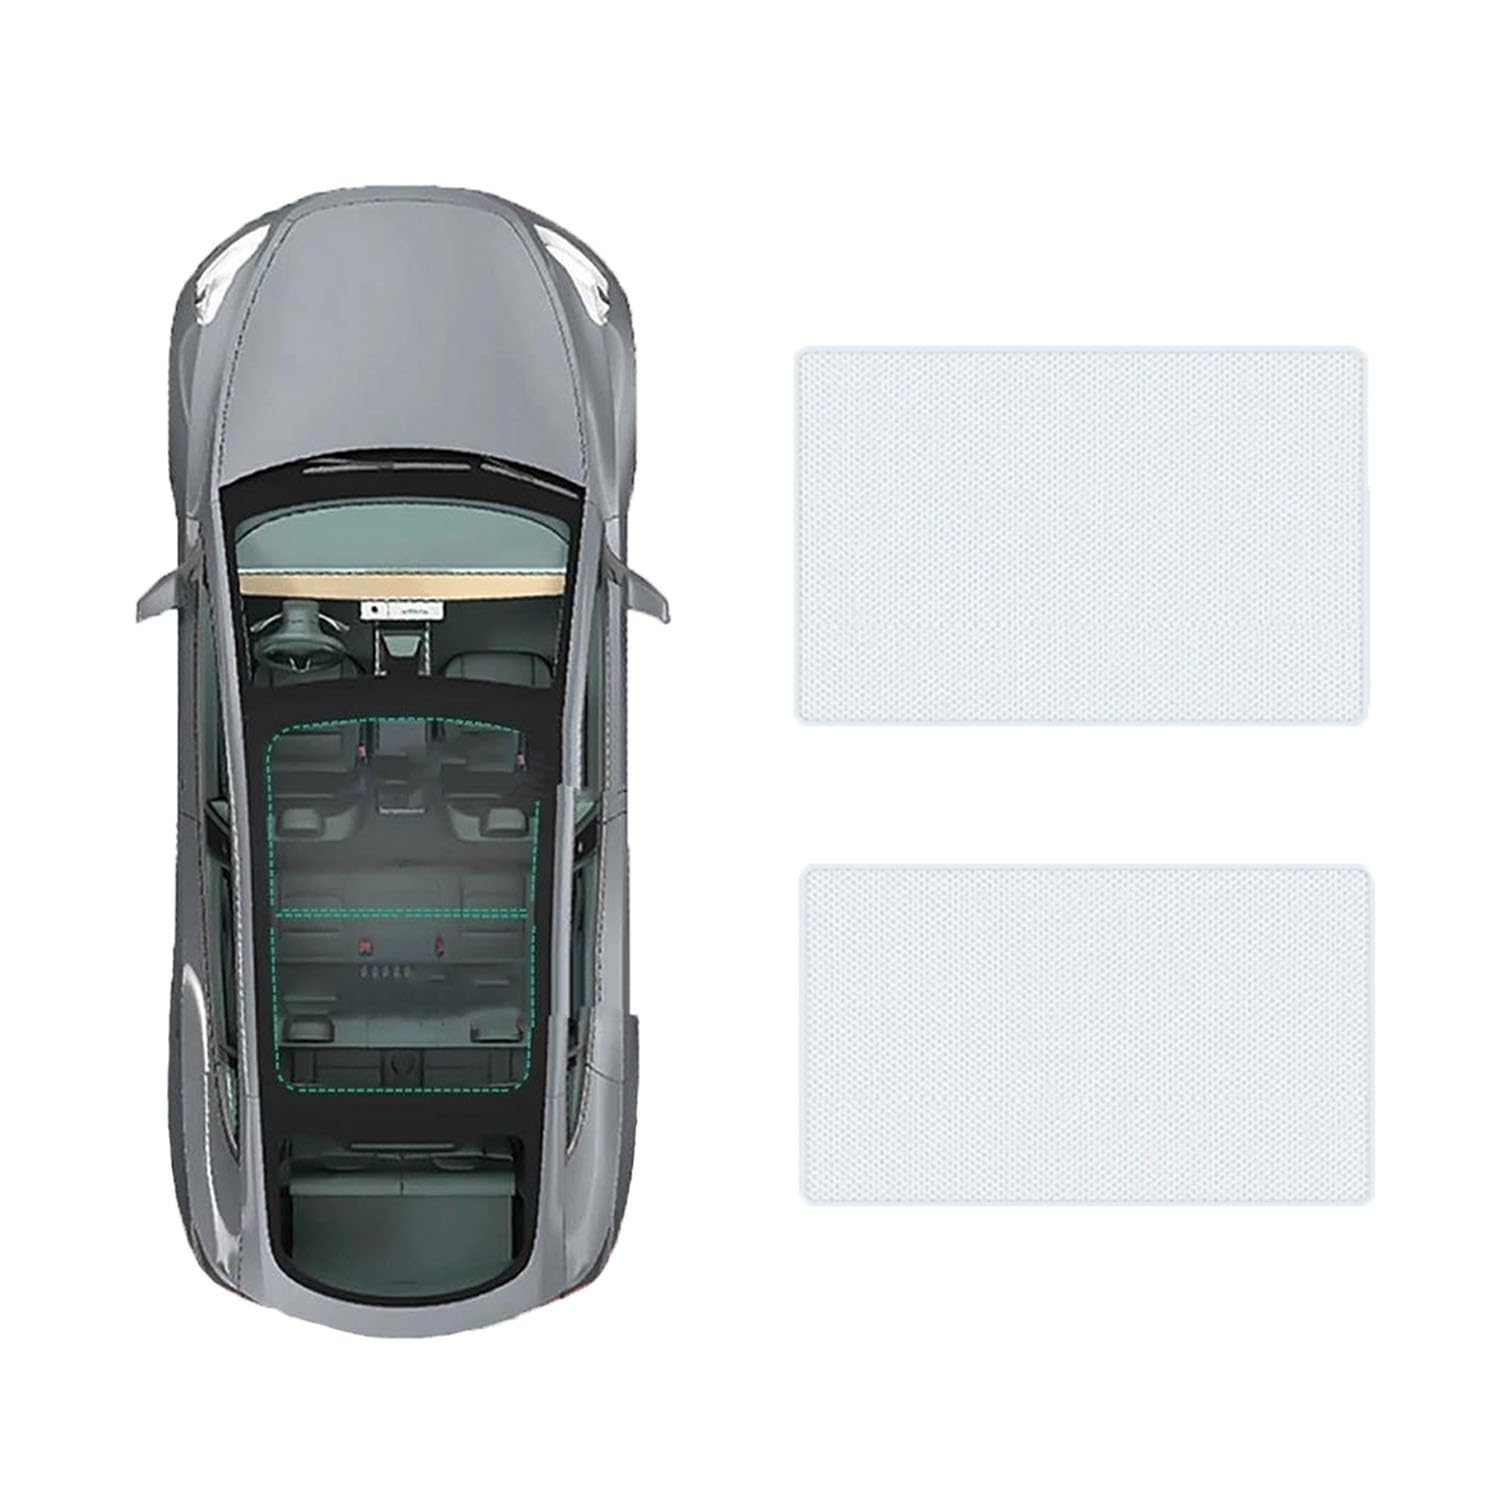 Für Toyota Avalon 2019- Auto-Schiebedach-Beschattung,Dach Wärme Isolierung Anti-UV Visier Auto Zubehör,A-Gray white regular Style von ANRAM